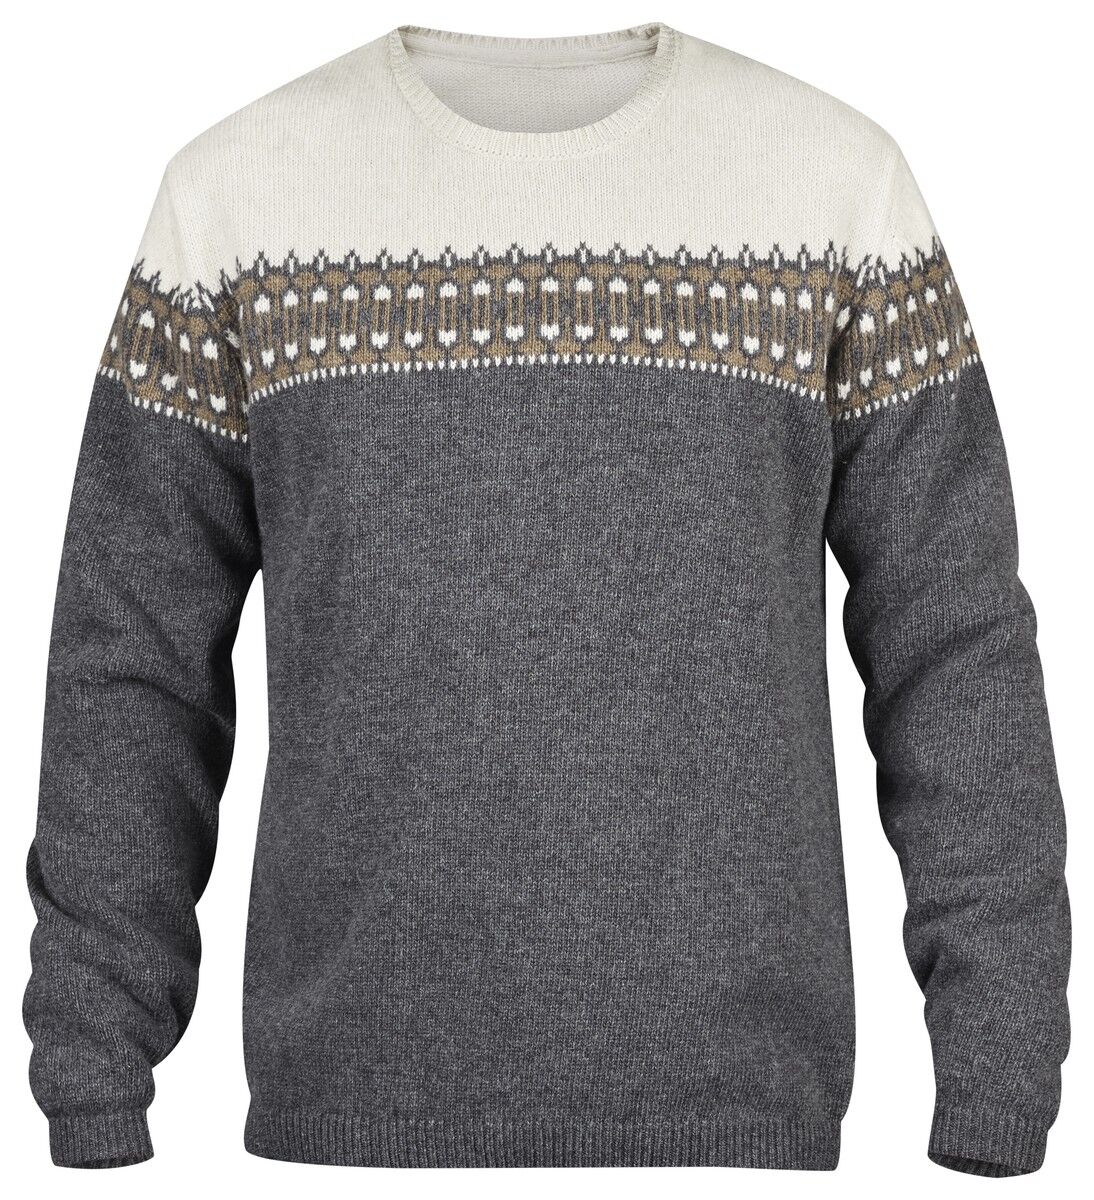 Fjällräven - Pull Övik Scandinavian Sweater - Felpa - Uomo